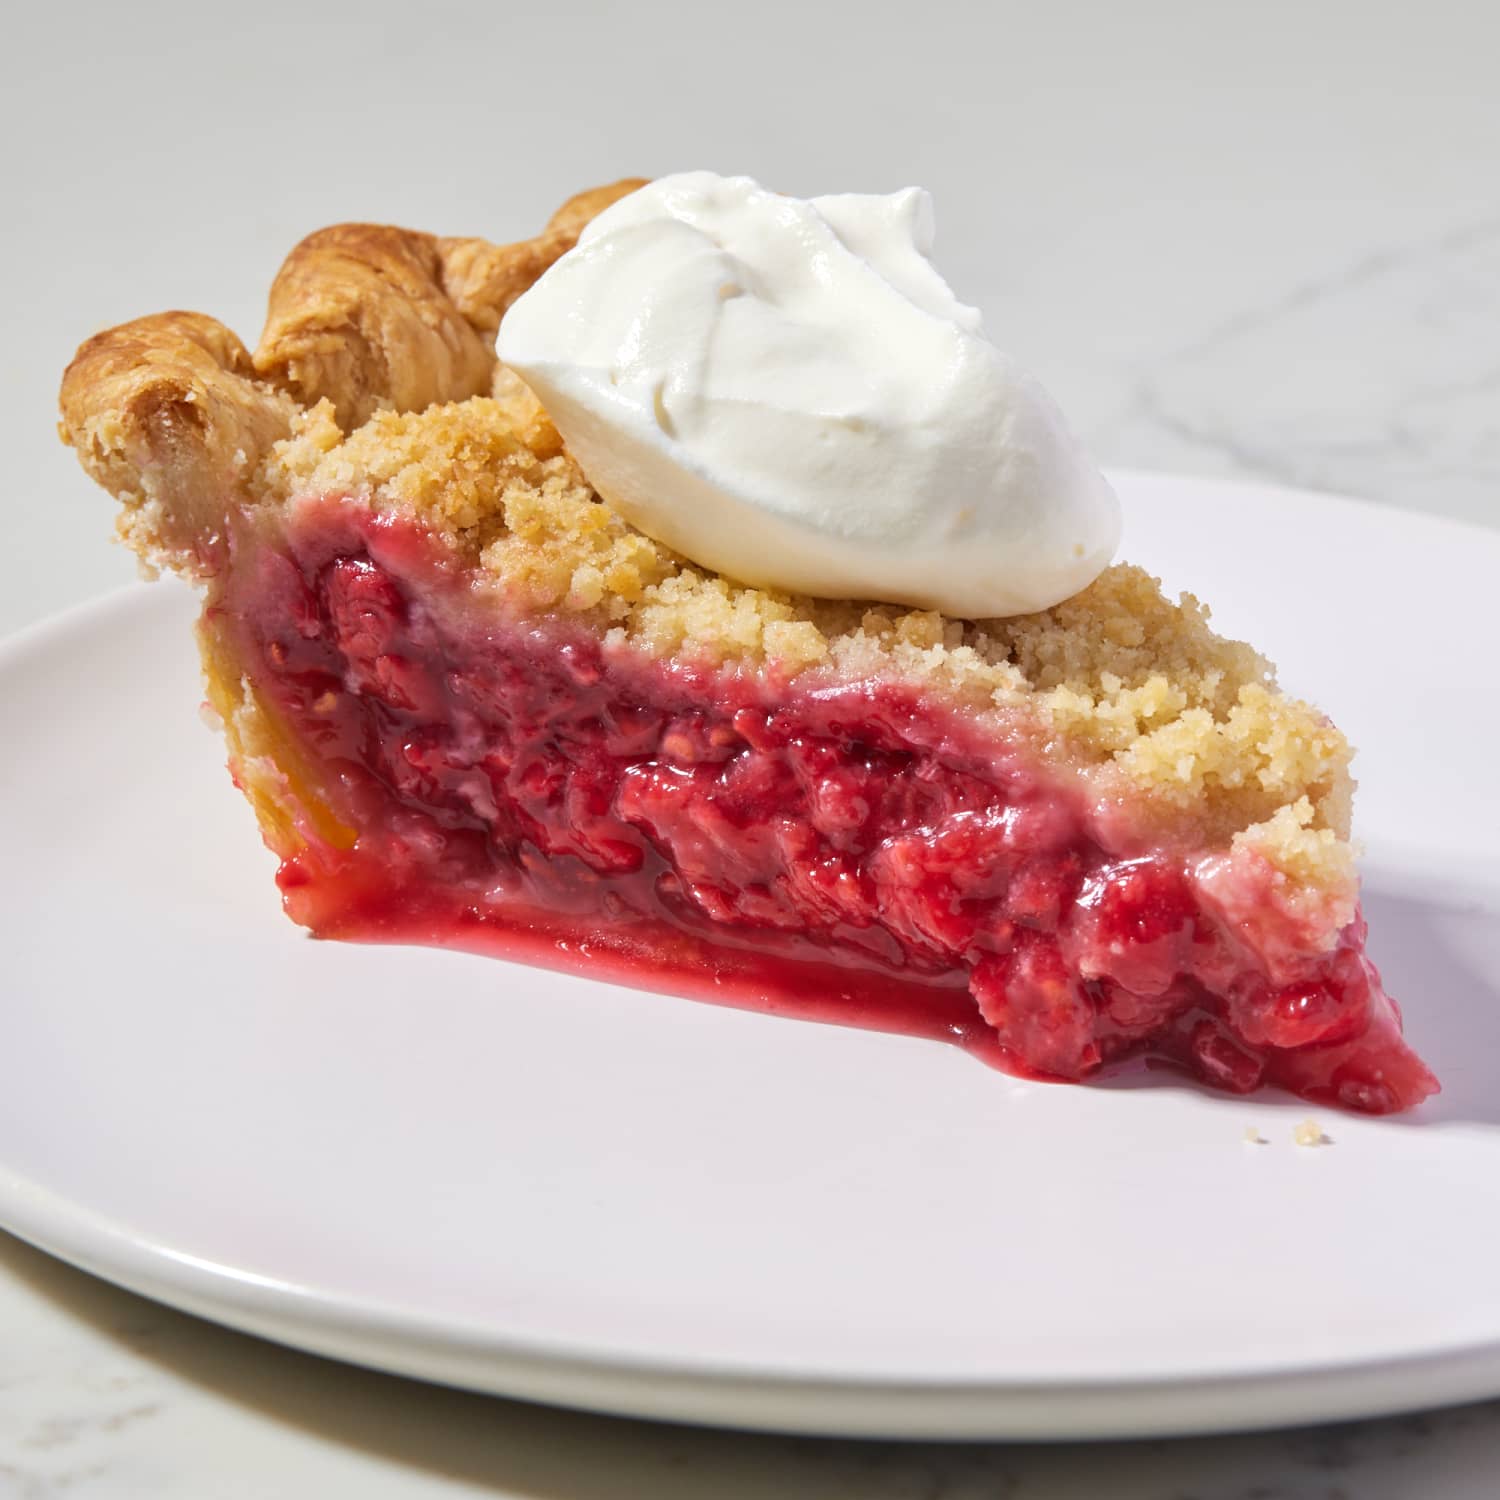 Strawberry Raspberry Pie Recipe Driscoll's, 48% OFF